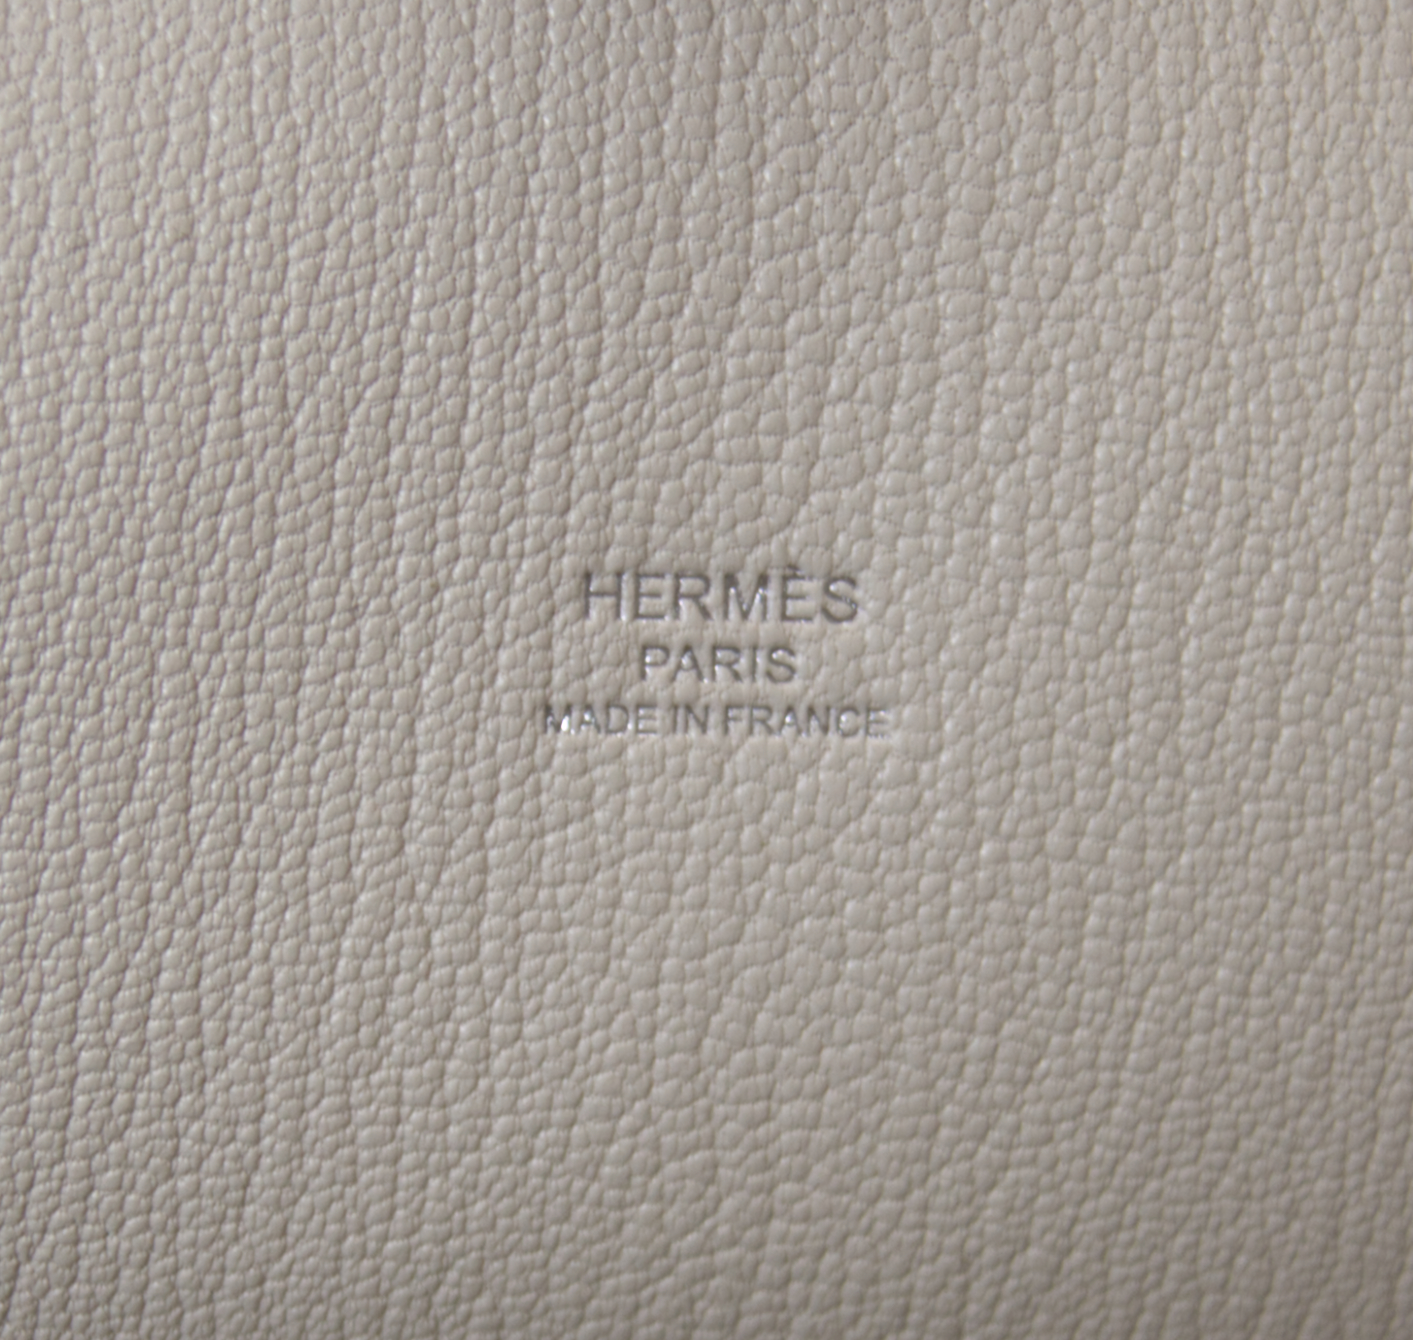 Hermès Jypsiere 28 Beton stamp